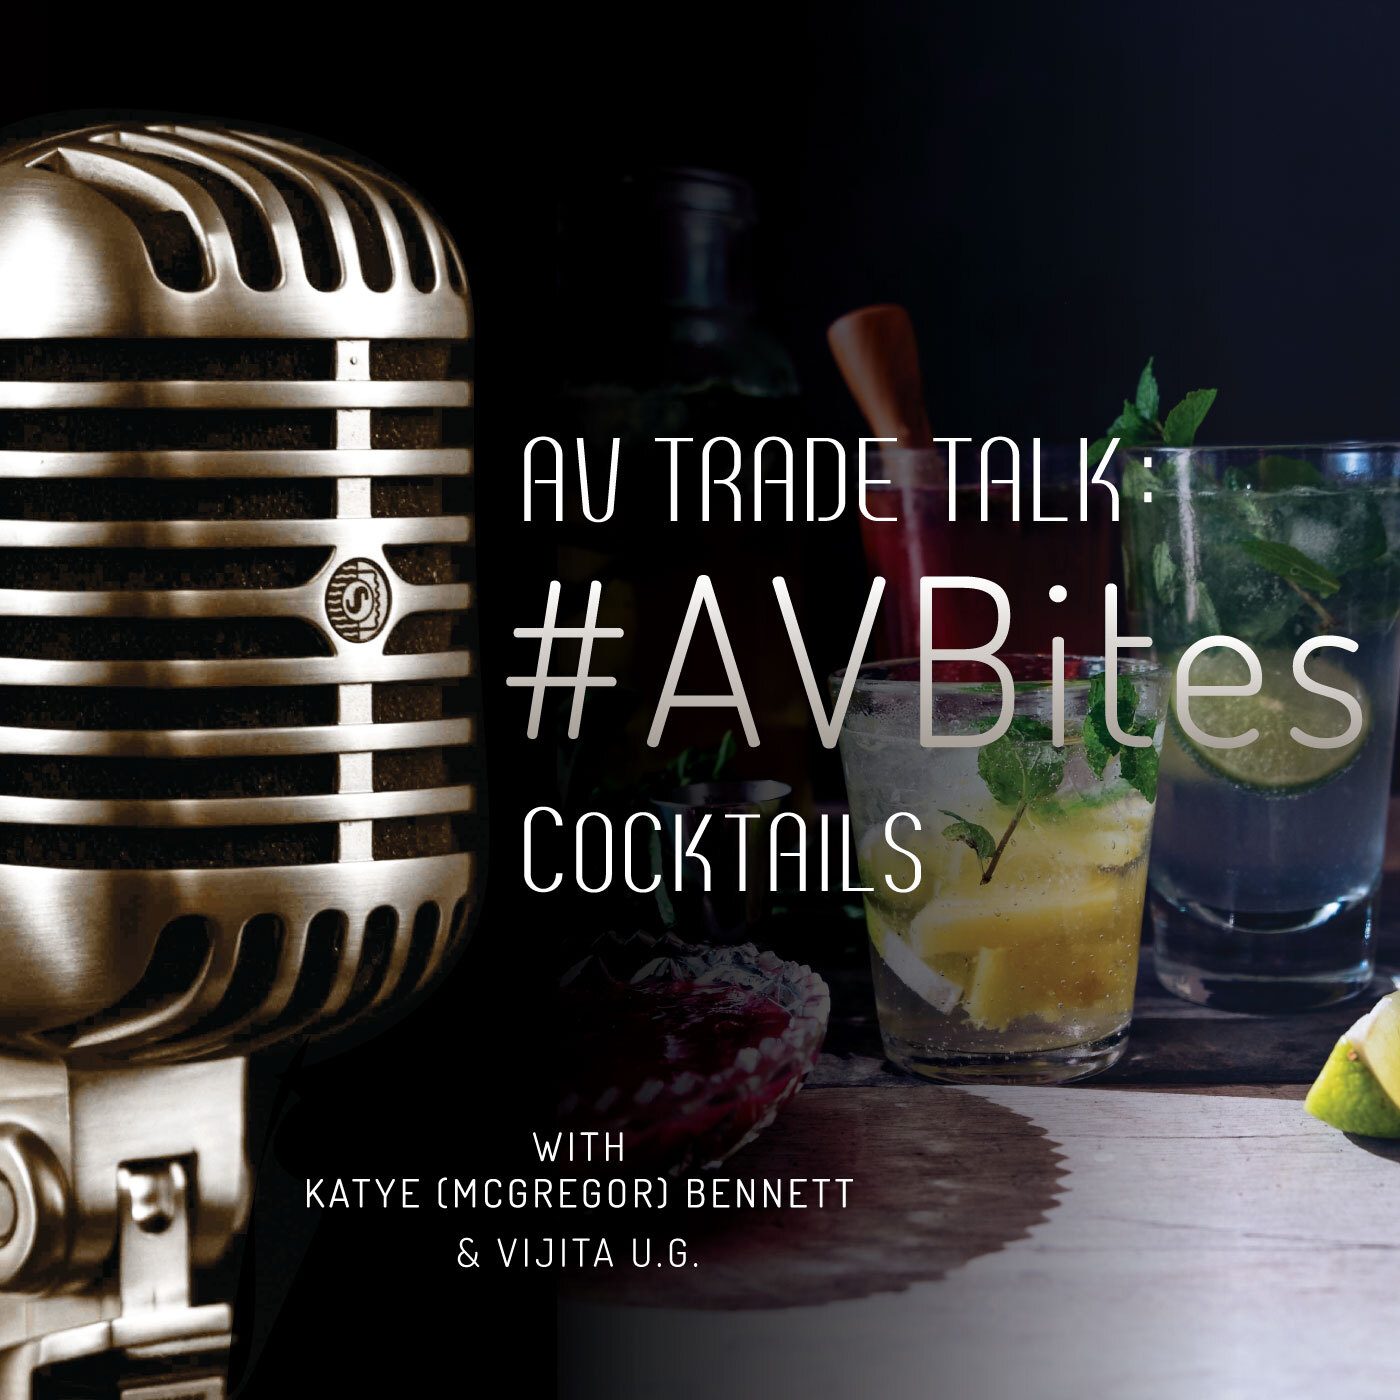 AVTT-bites_cocktails.jpg